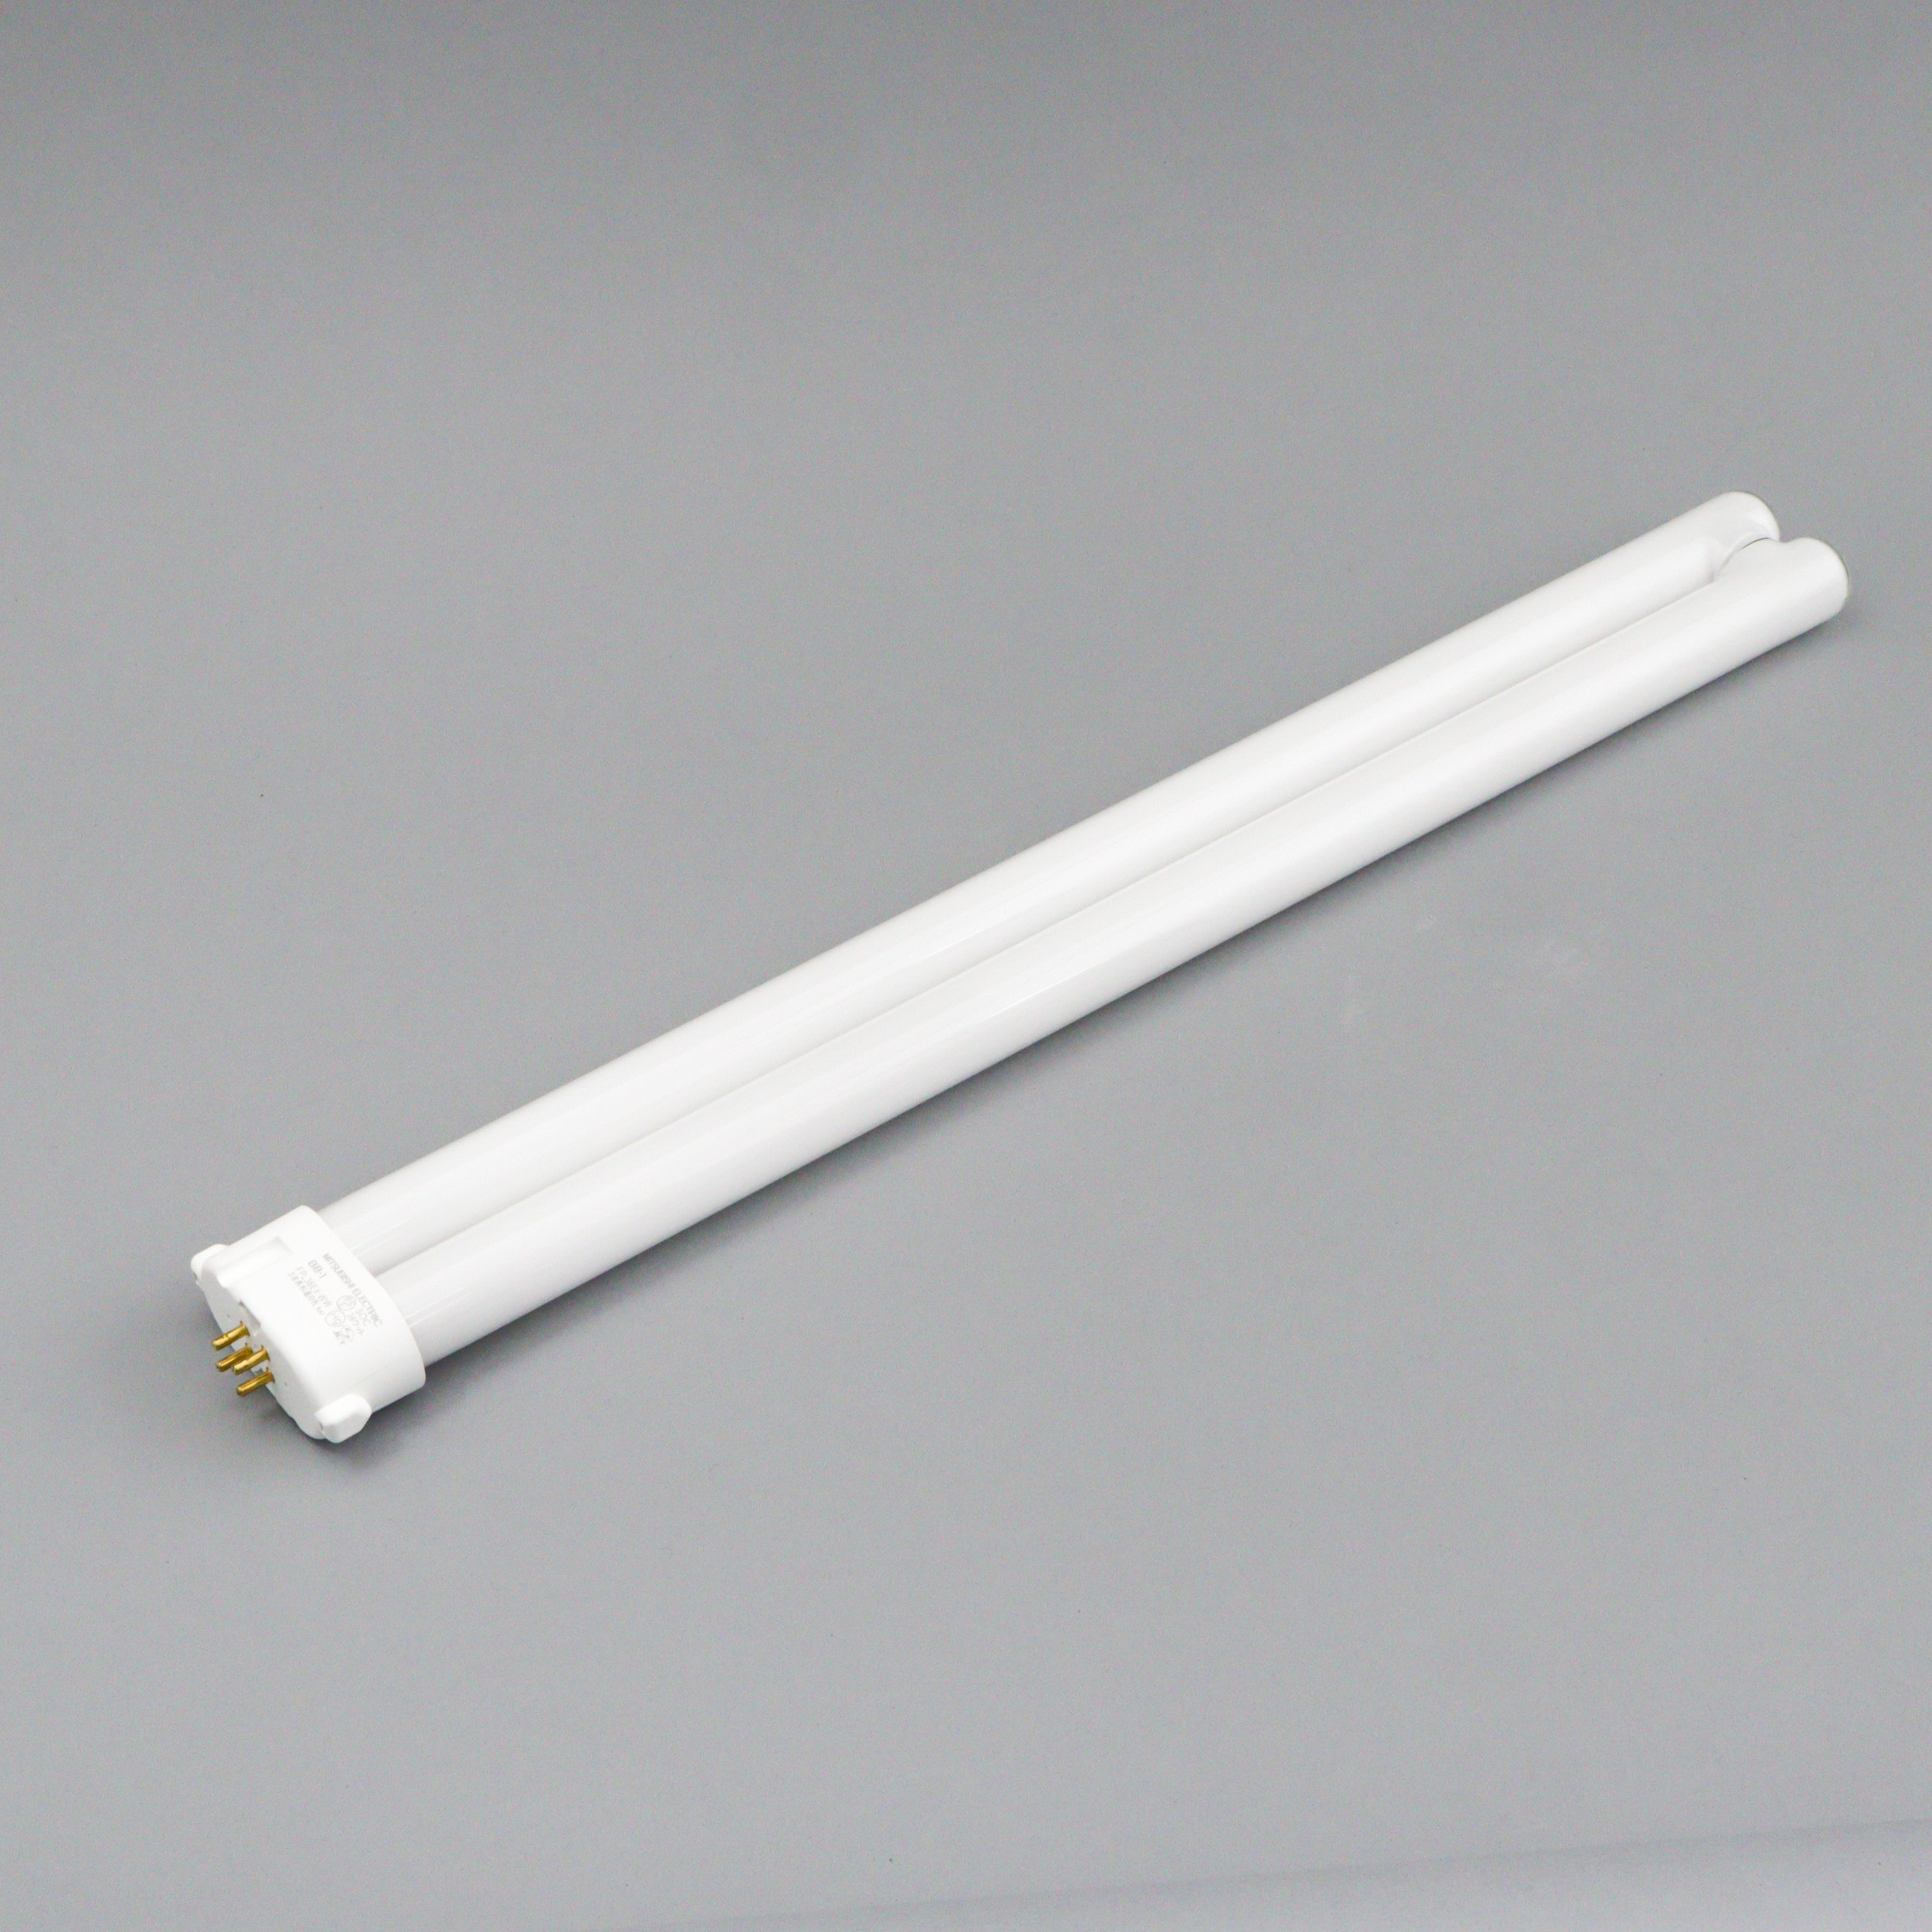 三菱 コンパクト形蛍光ランプ36形・昼白色BB・1 Single FPL36EXN